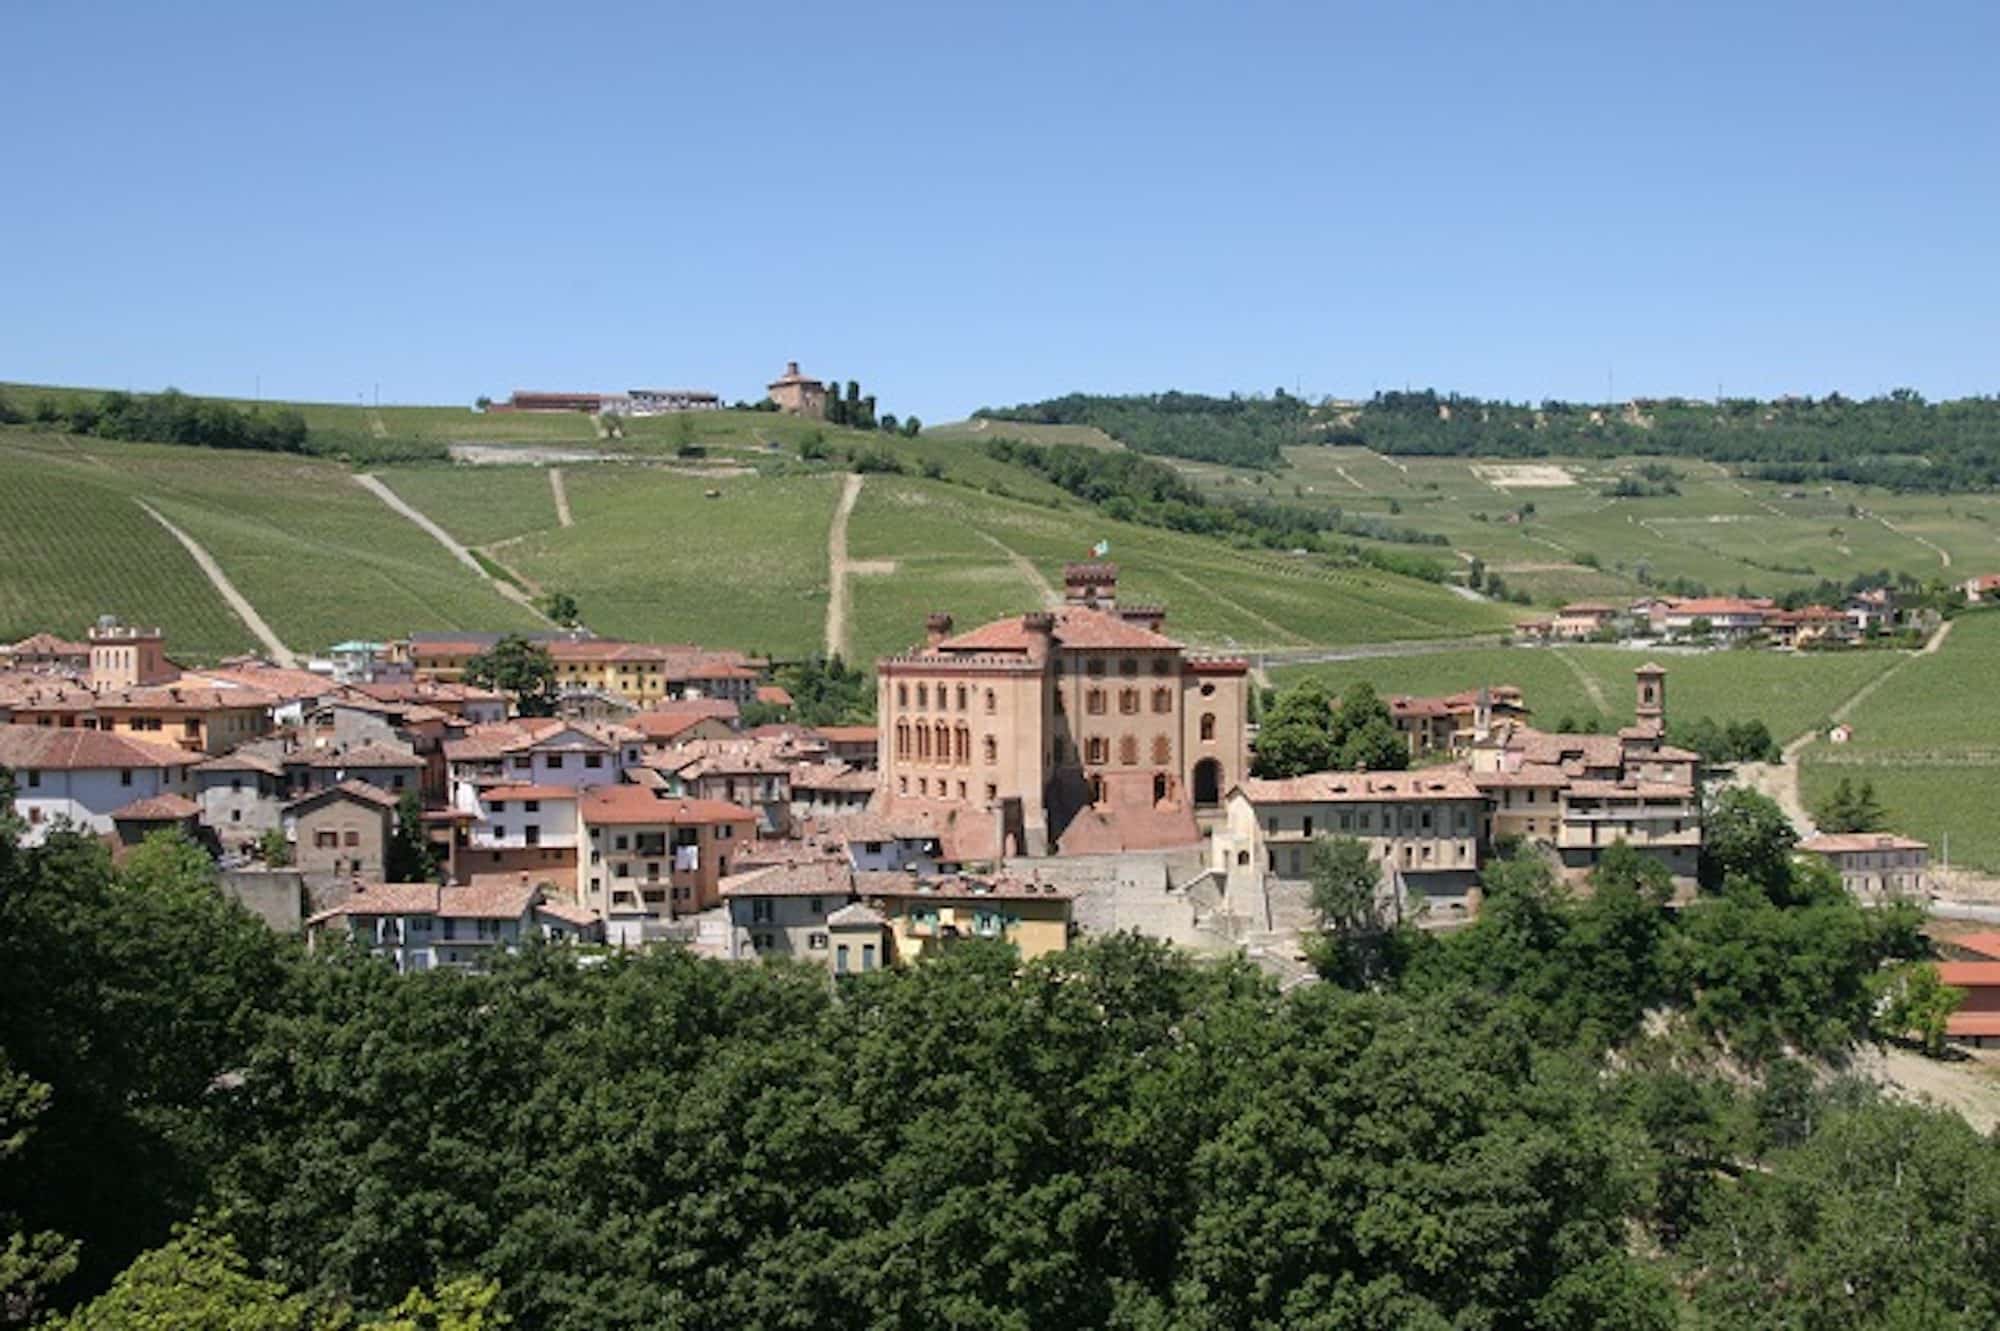 Featured Wine and Travel Italy Wineries from Piemonte - winery vignoble scarzello giorgio e figli